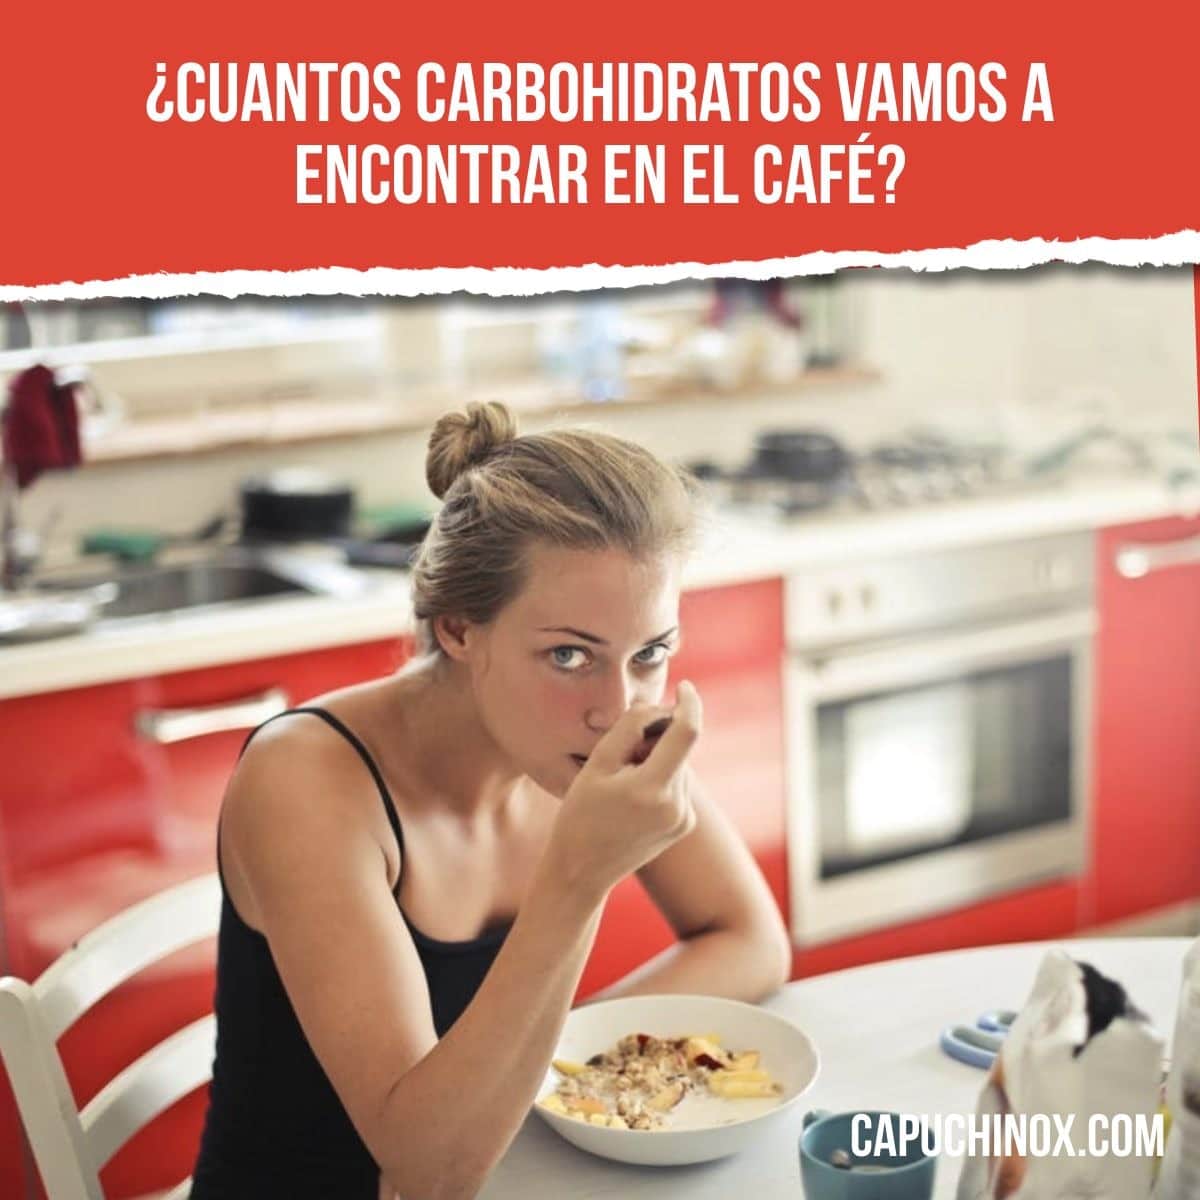 ¿Cuantos carbohidratos vamos a encontrar en el café?